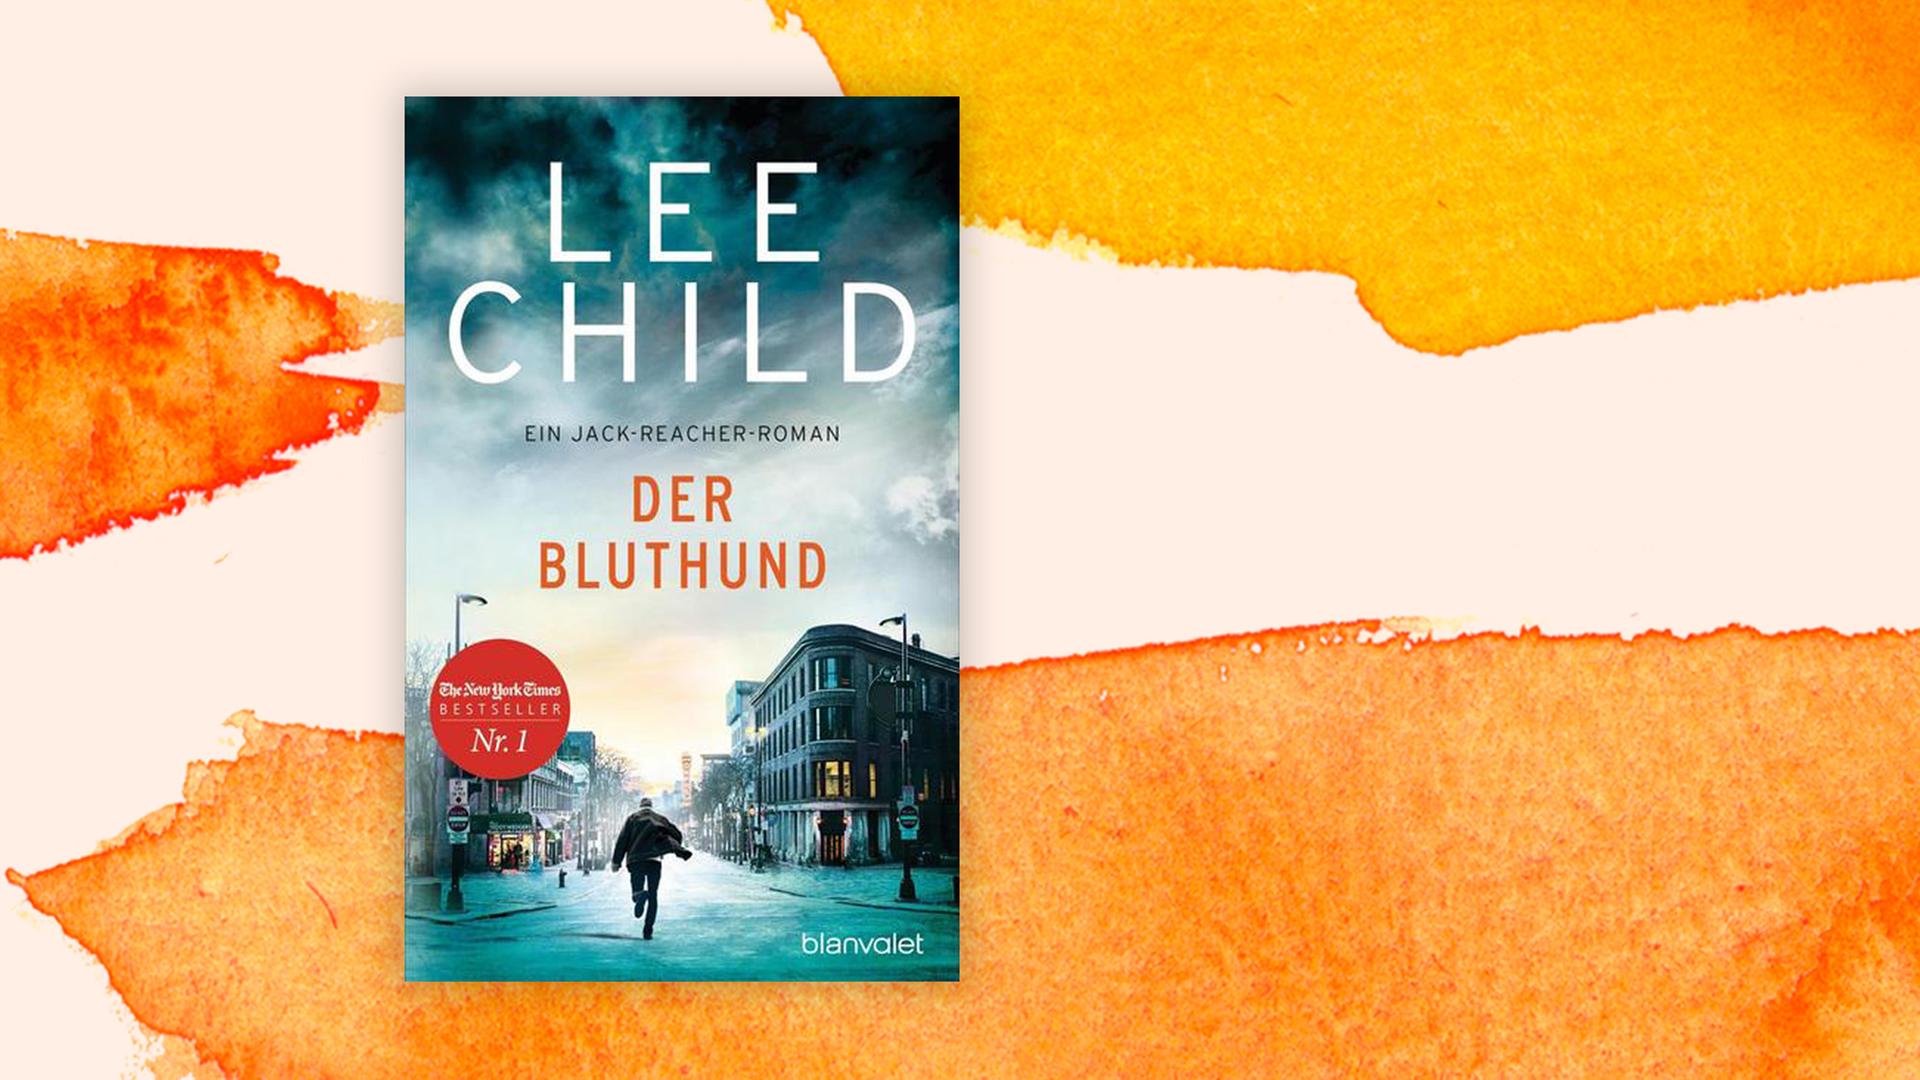 Das Cover von Lee Childs Buch "Der Bluthund" auf orange-weißem Hintergrund. Auf dem Coverfoto läuft ein Mann mitten auf der Straße mit dem Gesicht vom Leser weg durch eine menschenleere Stadtlandschaft.